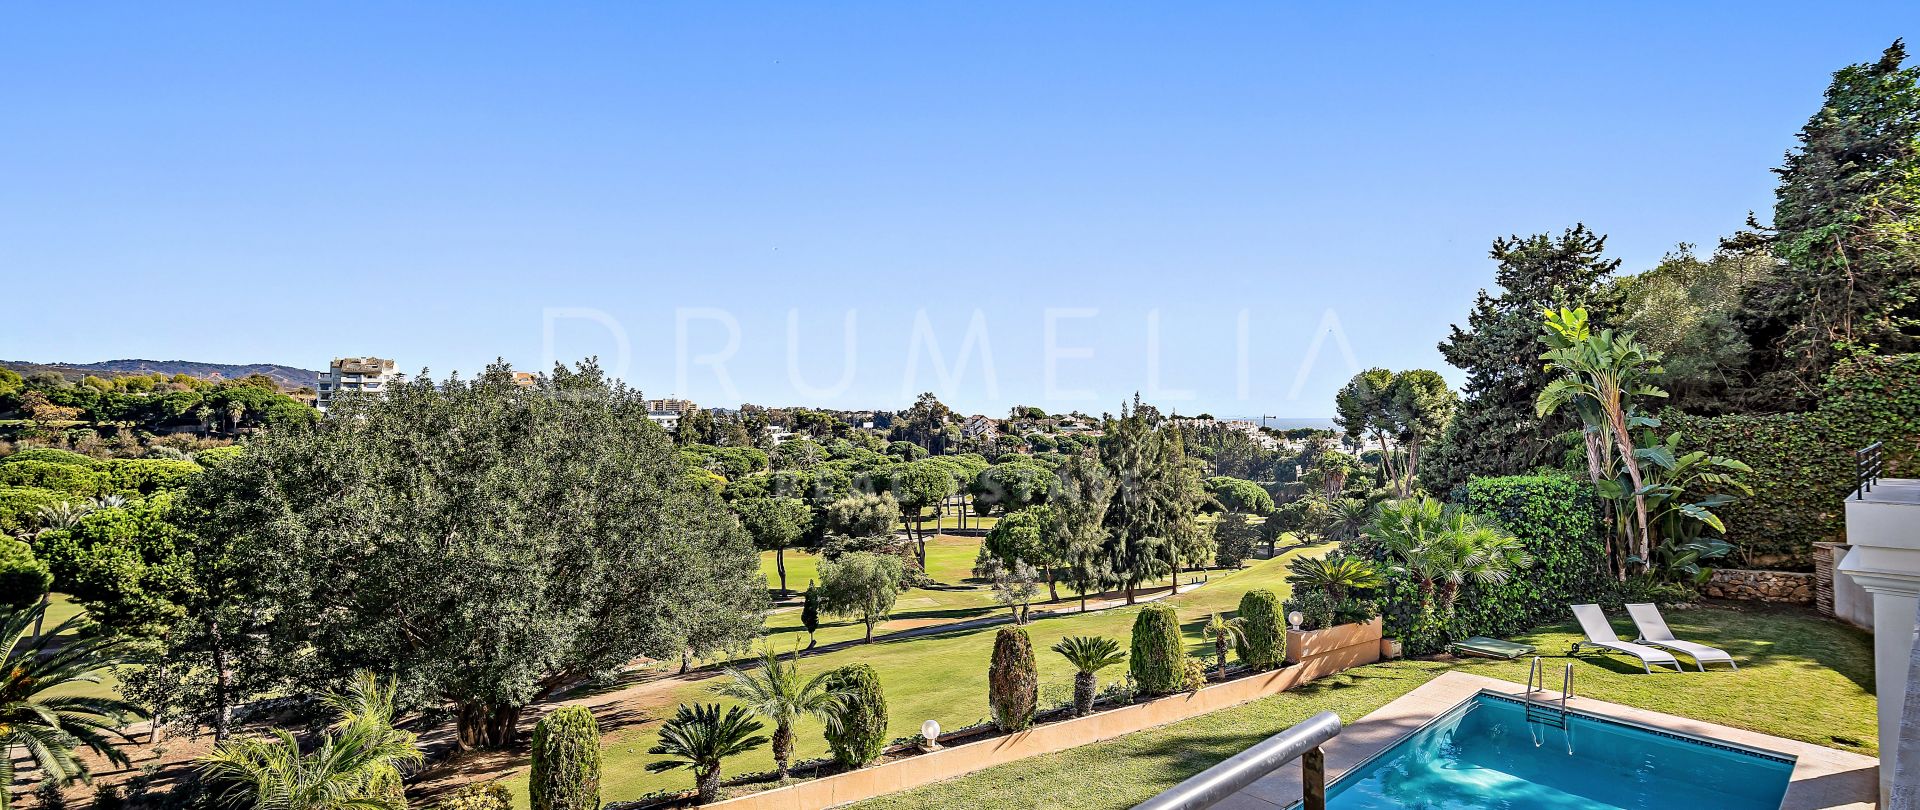 Elegante, moderne mediterrane Luxusvilla in erster Reihe am Golfplatz Rio Real Golf, Marbella